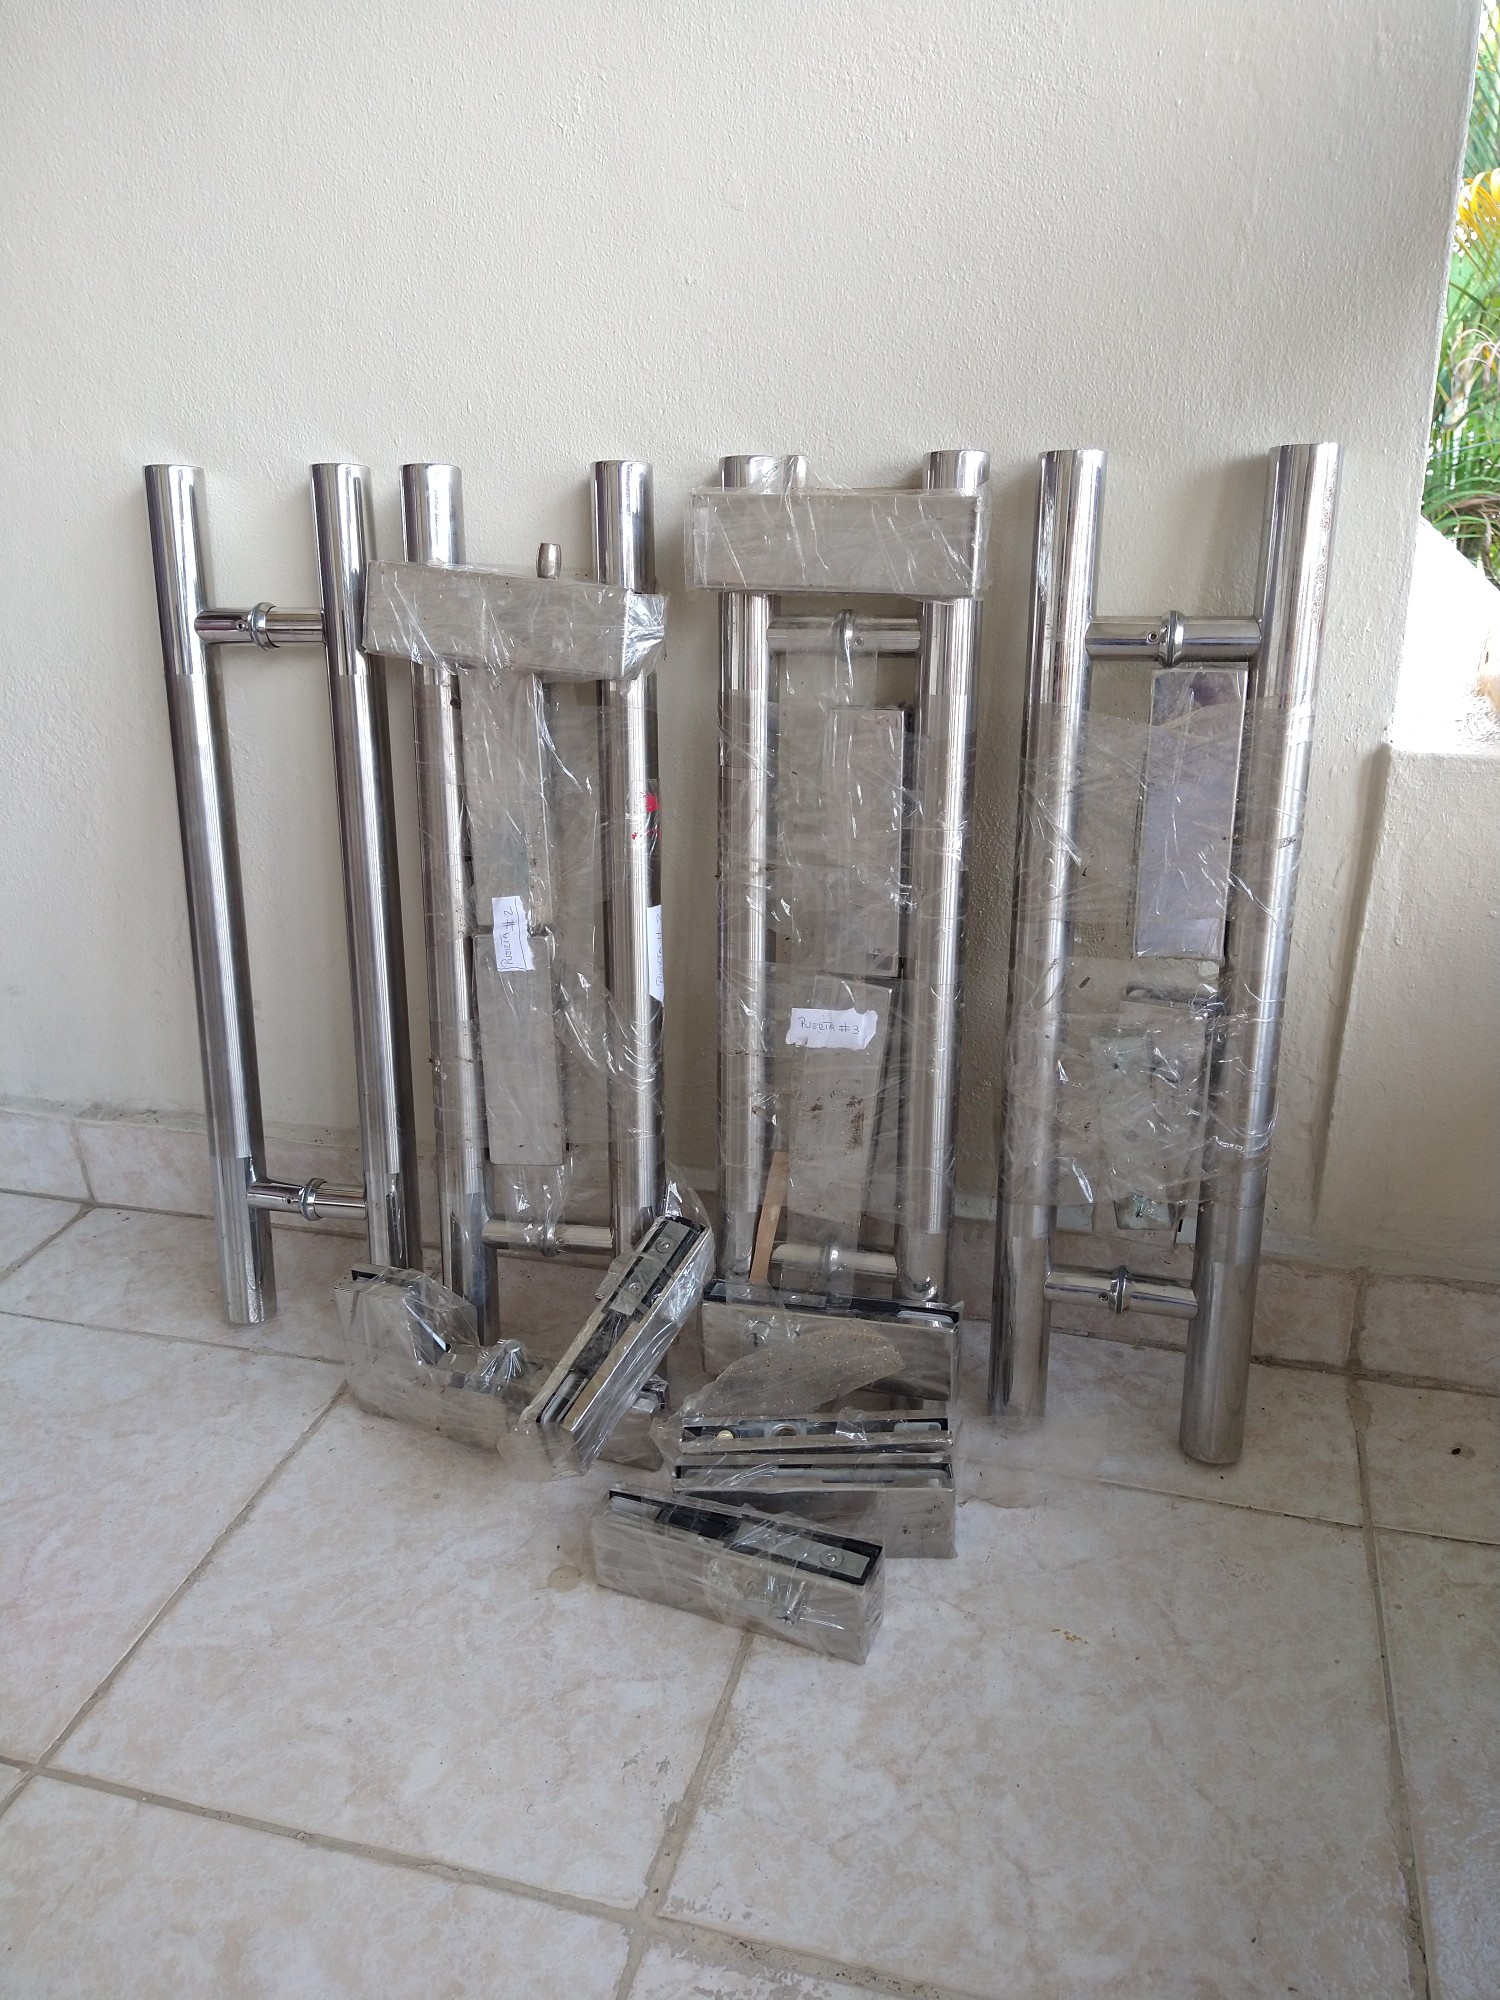 herramientas, jardines y exterior - 4 tiradores tipo h acero inoxidable puerta comerciales cristal